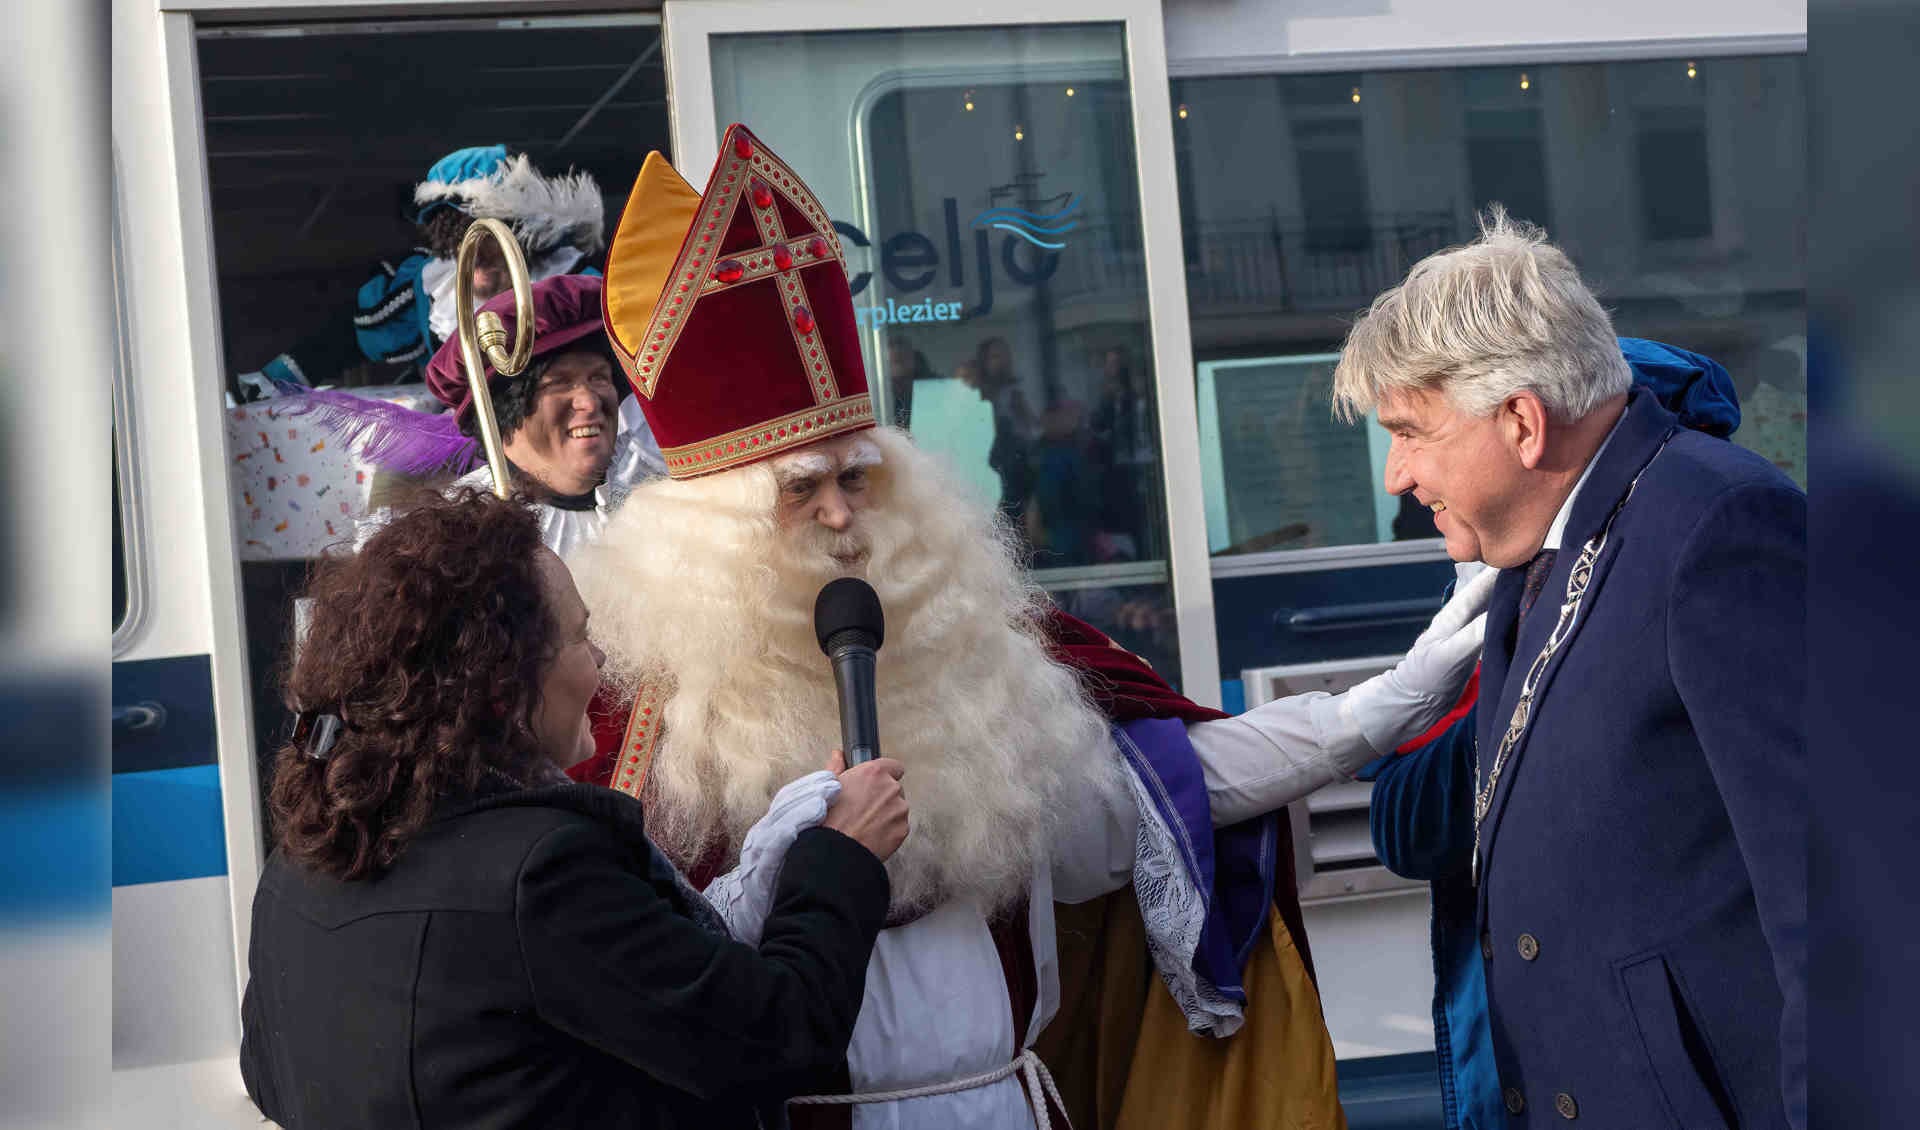 Het was nog een hele tour om aan te meren, maar met hulp van de burgemeester van de gemeente Zutphen, Wimar Jaeger, kon Sinterklaas voet aan wal zetten. Foto's: Eddy Boerman